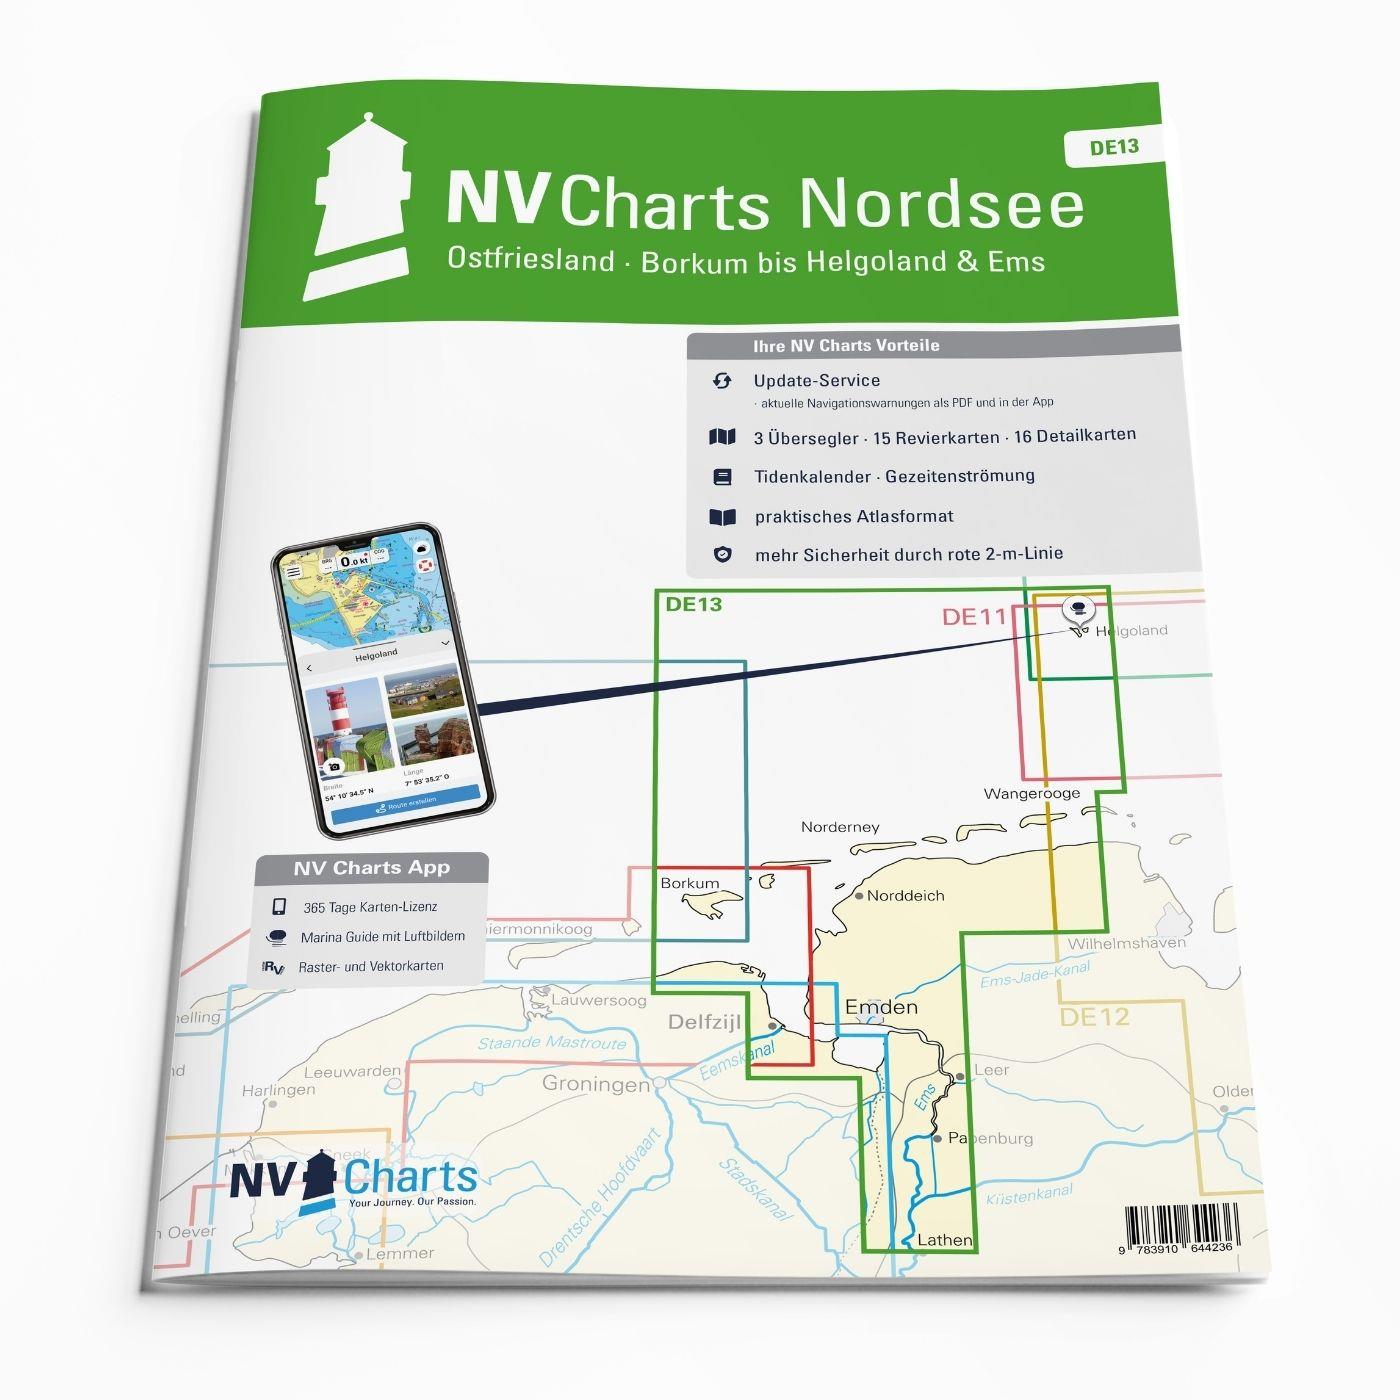 NV Charts Nordsee DE13 - Ostfriesland, Borkum bis Helgoland & Ems